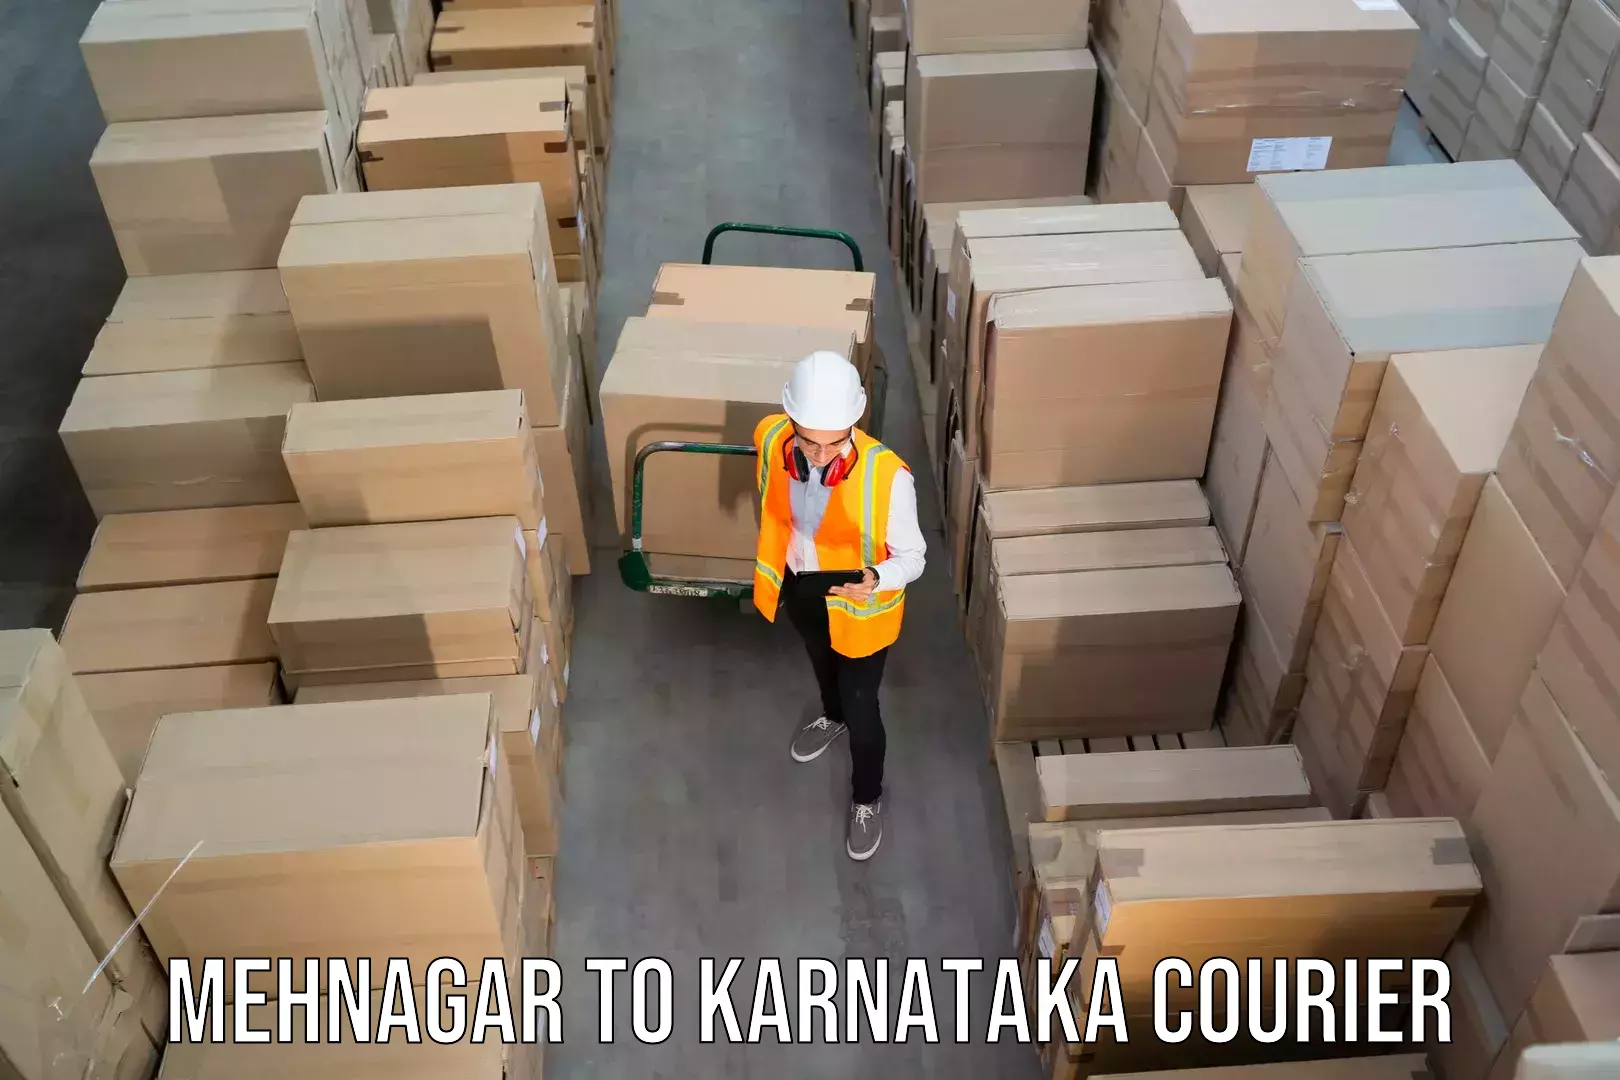 Courier service comparison Mehnagar to Karnataka